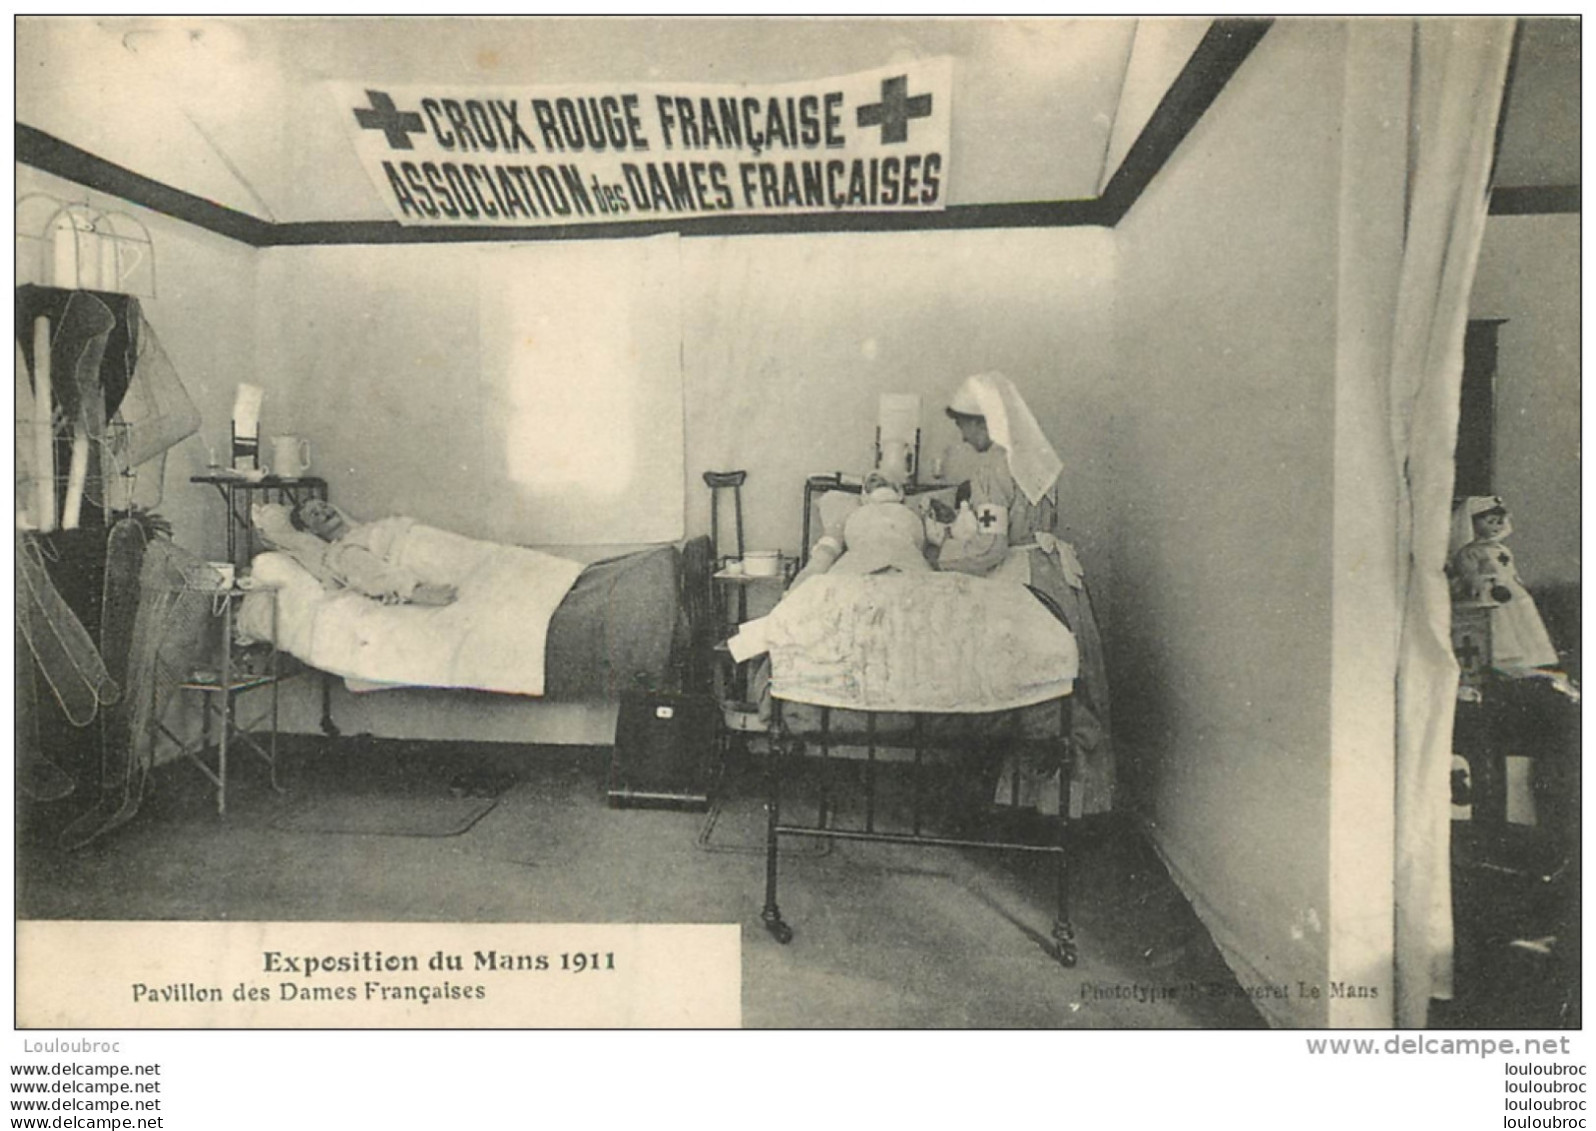 CROIX ROUGE FRANCAISE ASSOCIATION DES DAMES FRANCAISES EXPOSITION DU MANS 1911 PAVILLON DES DAMES FRANCAISES - Salud